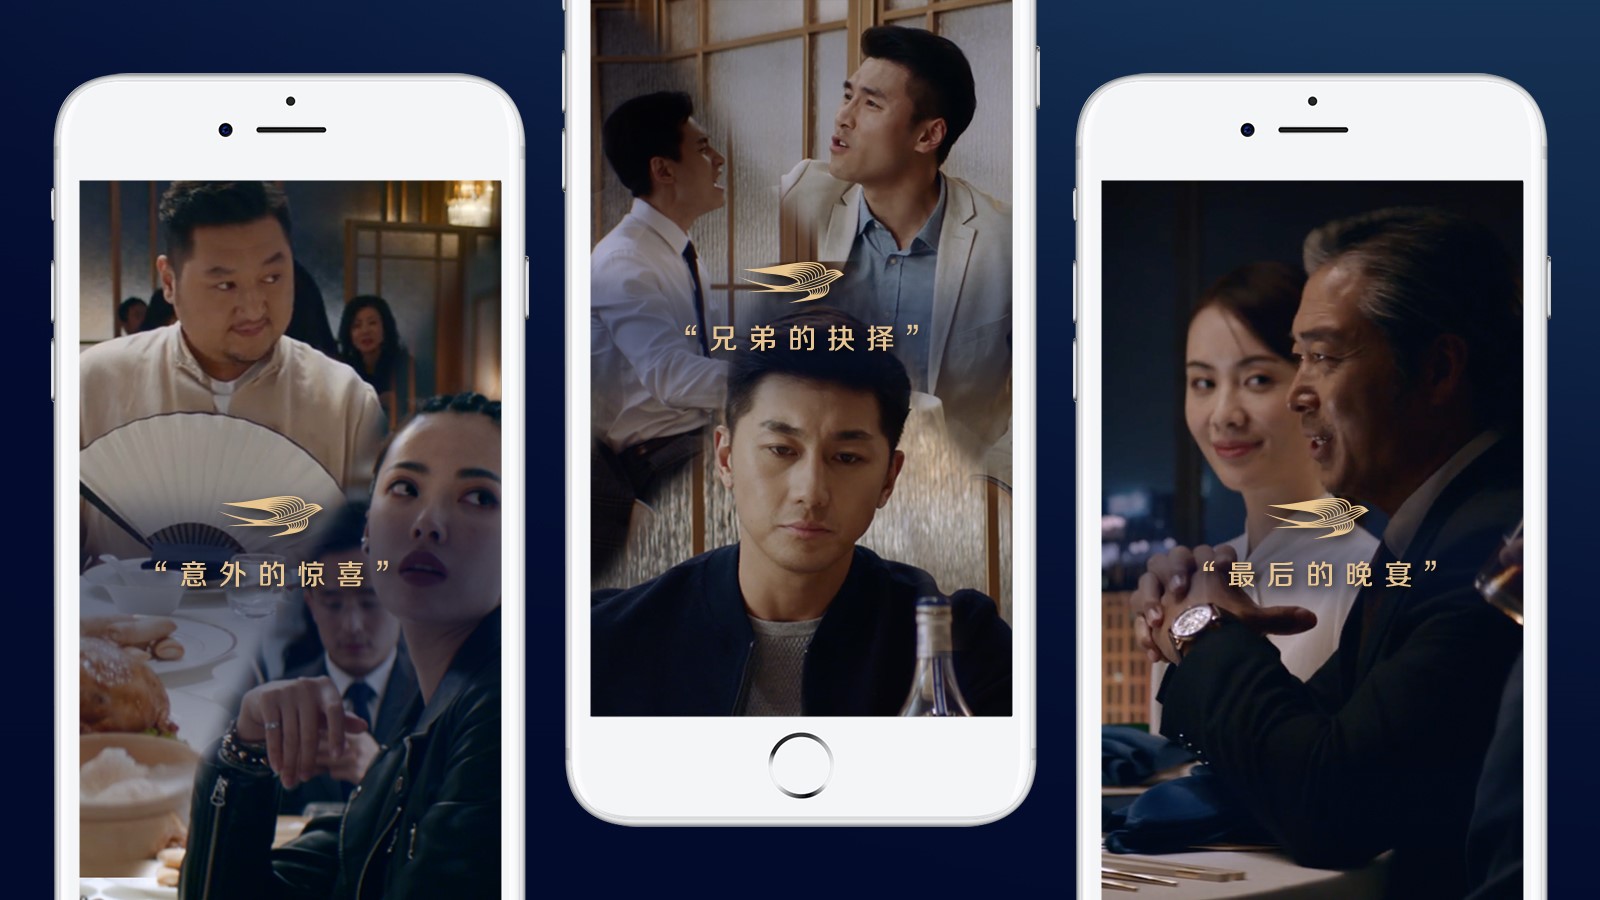 马爹利携手百比赫中国打造的虚拟餐厅将如何吸睛中国消费者？